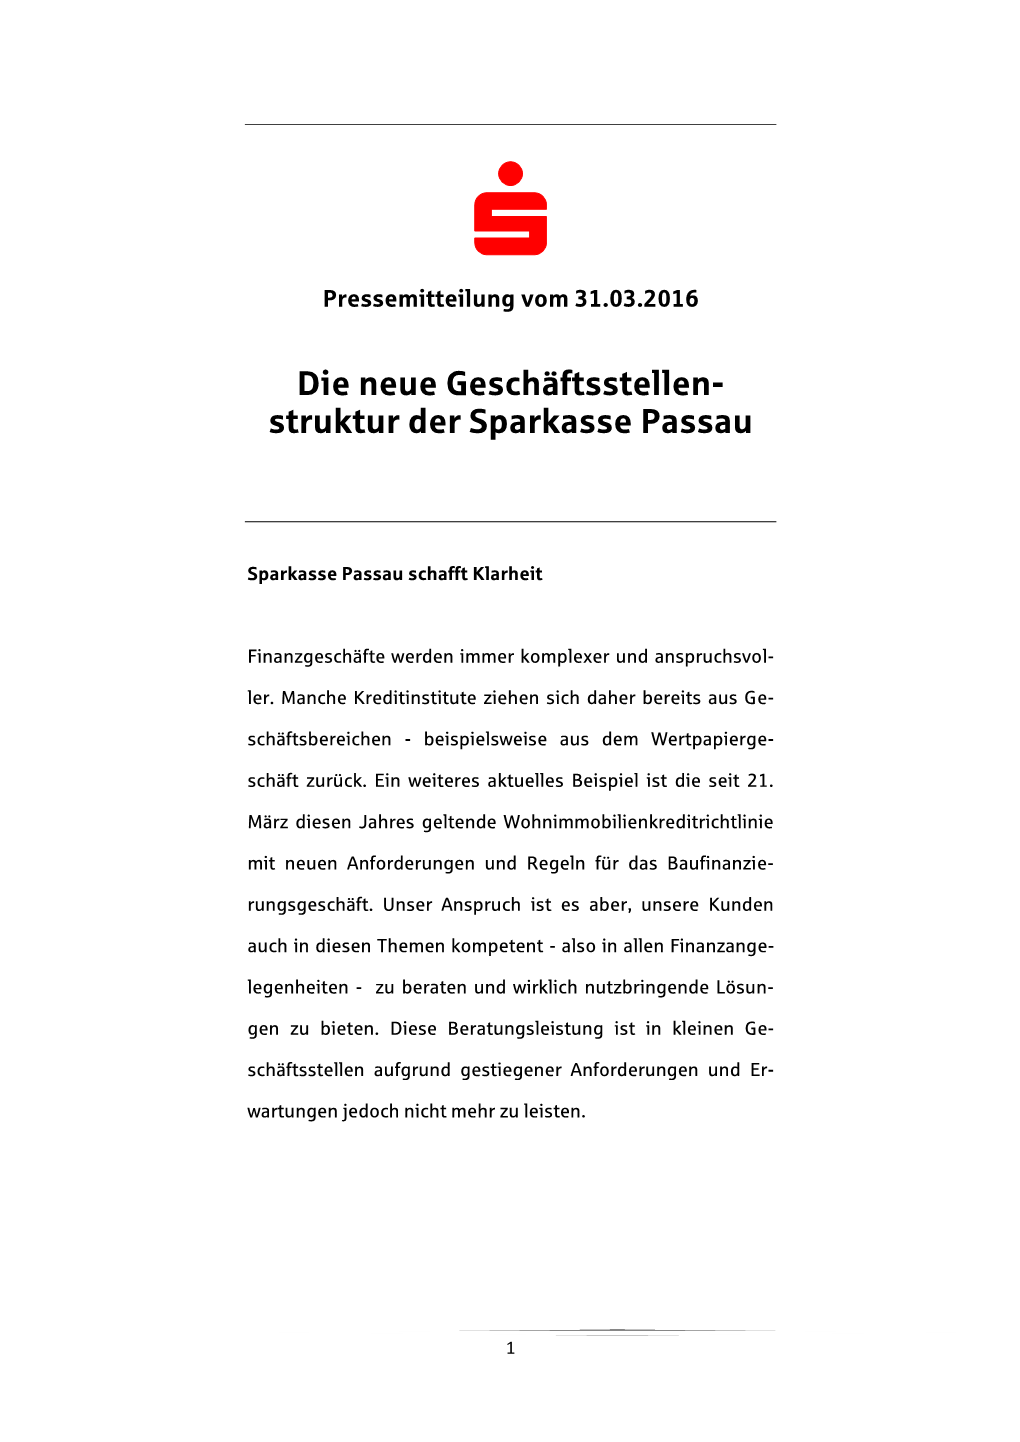 Die Neue Geschäftsstellen- Struktur Der Sparkasse Passau